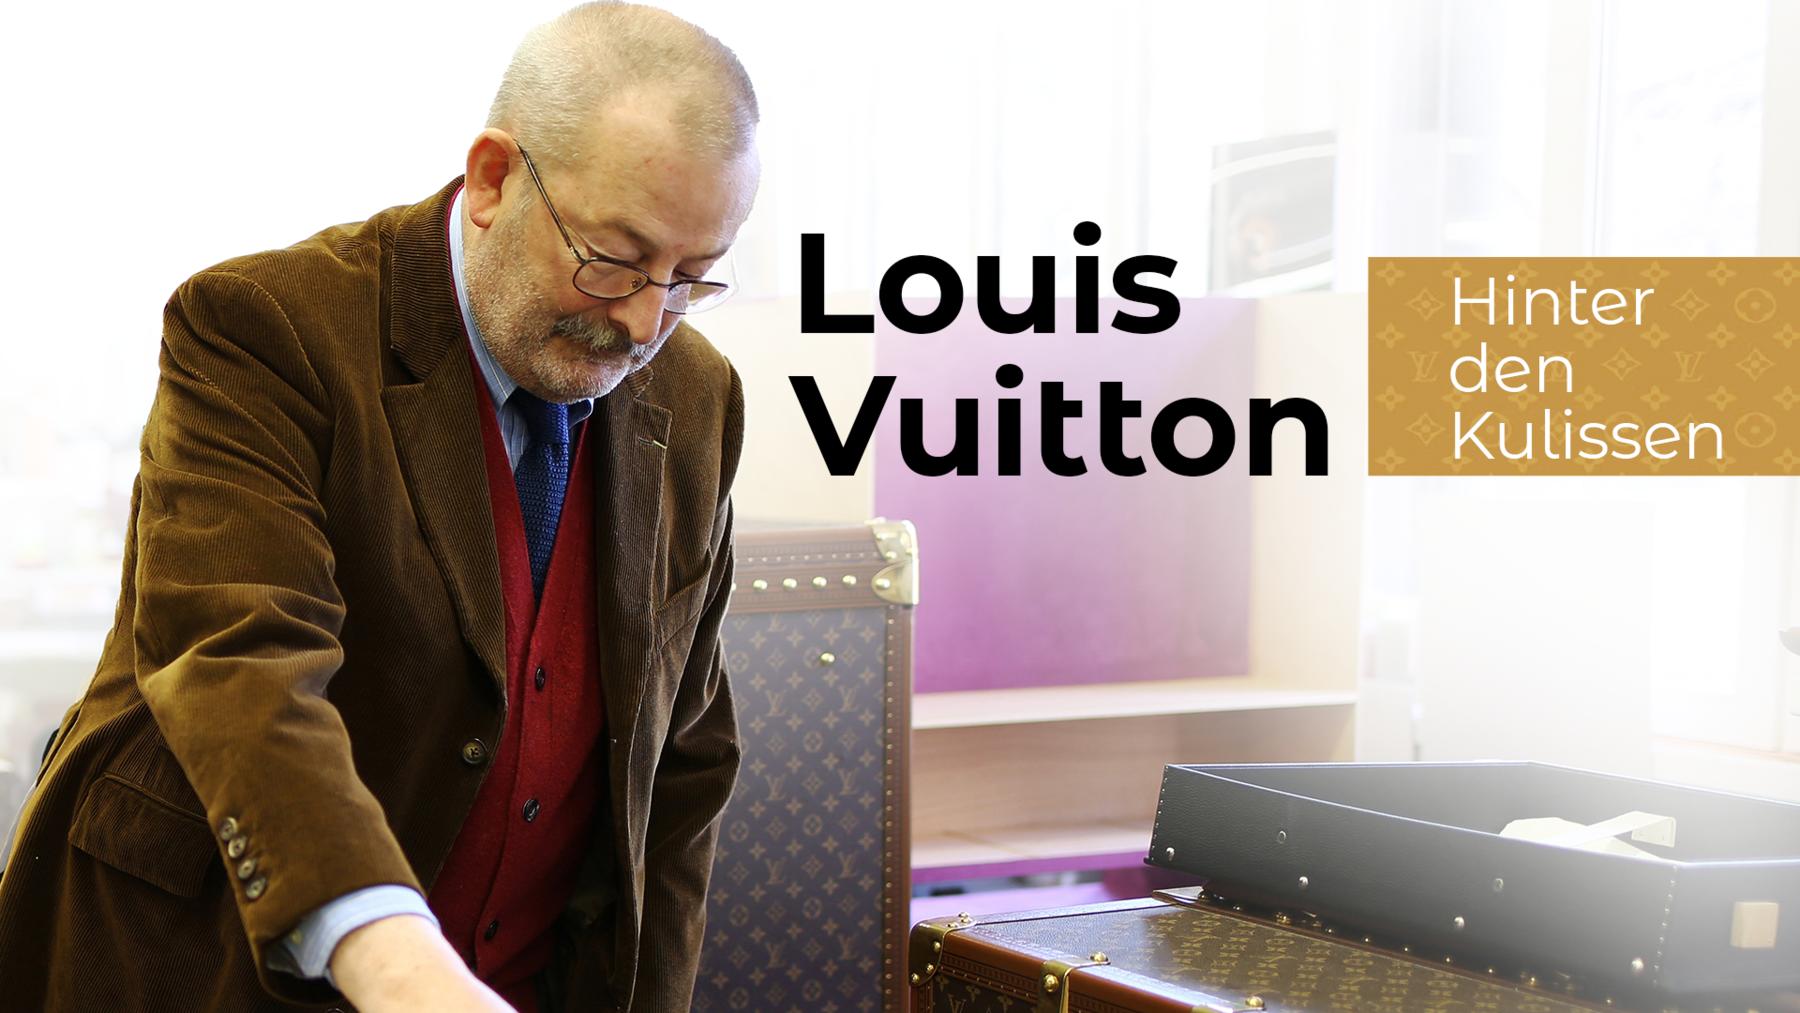 Louis Vuitton: Hinter den Kulissen